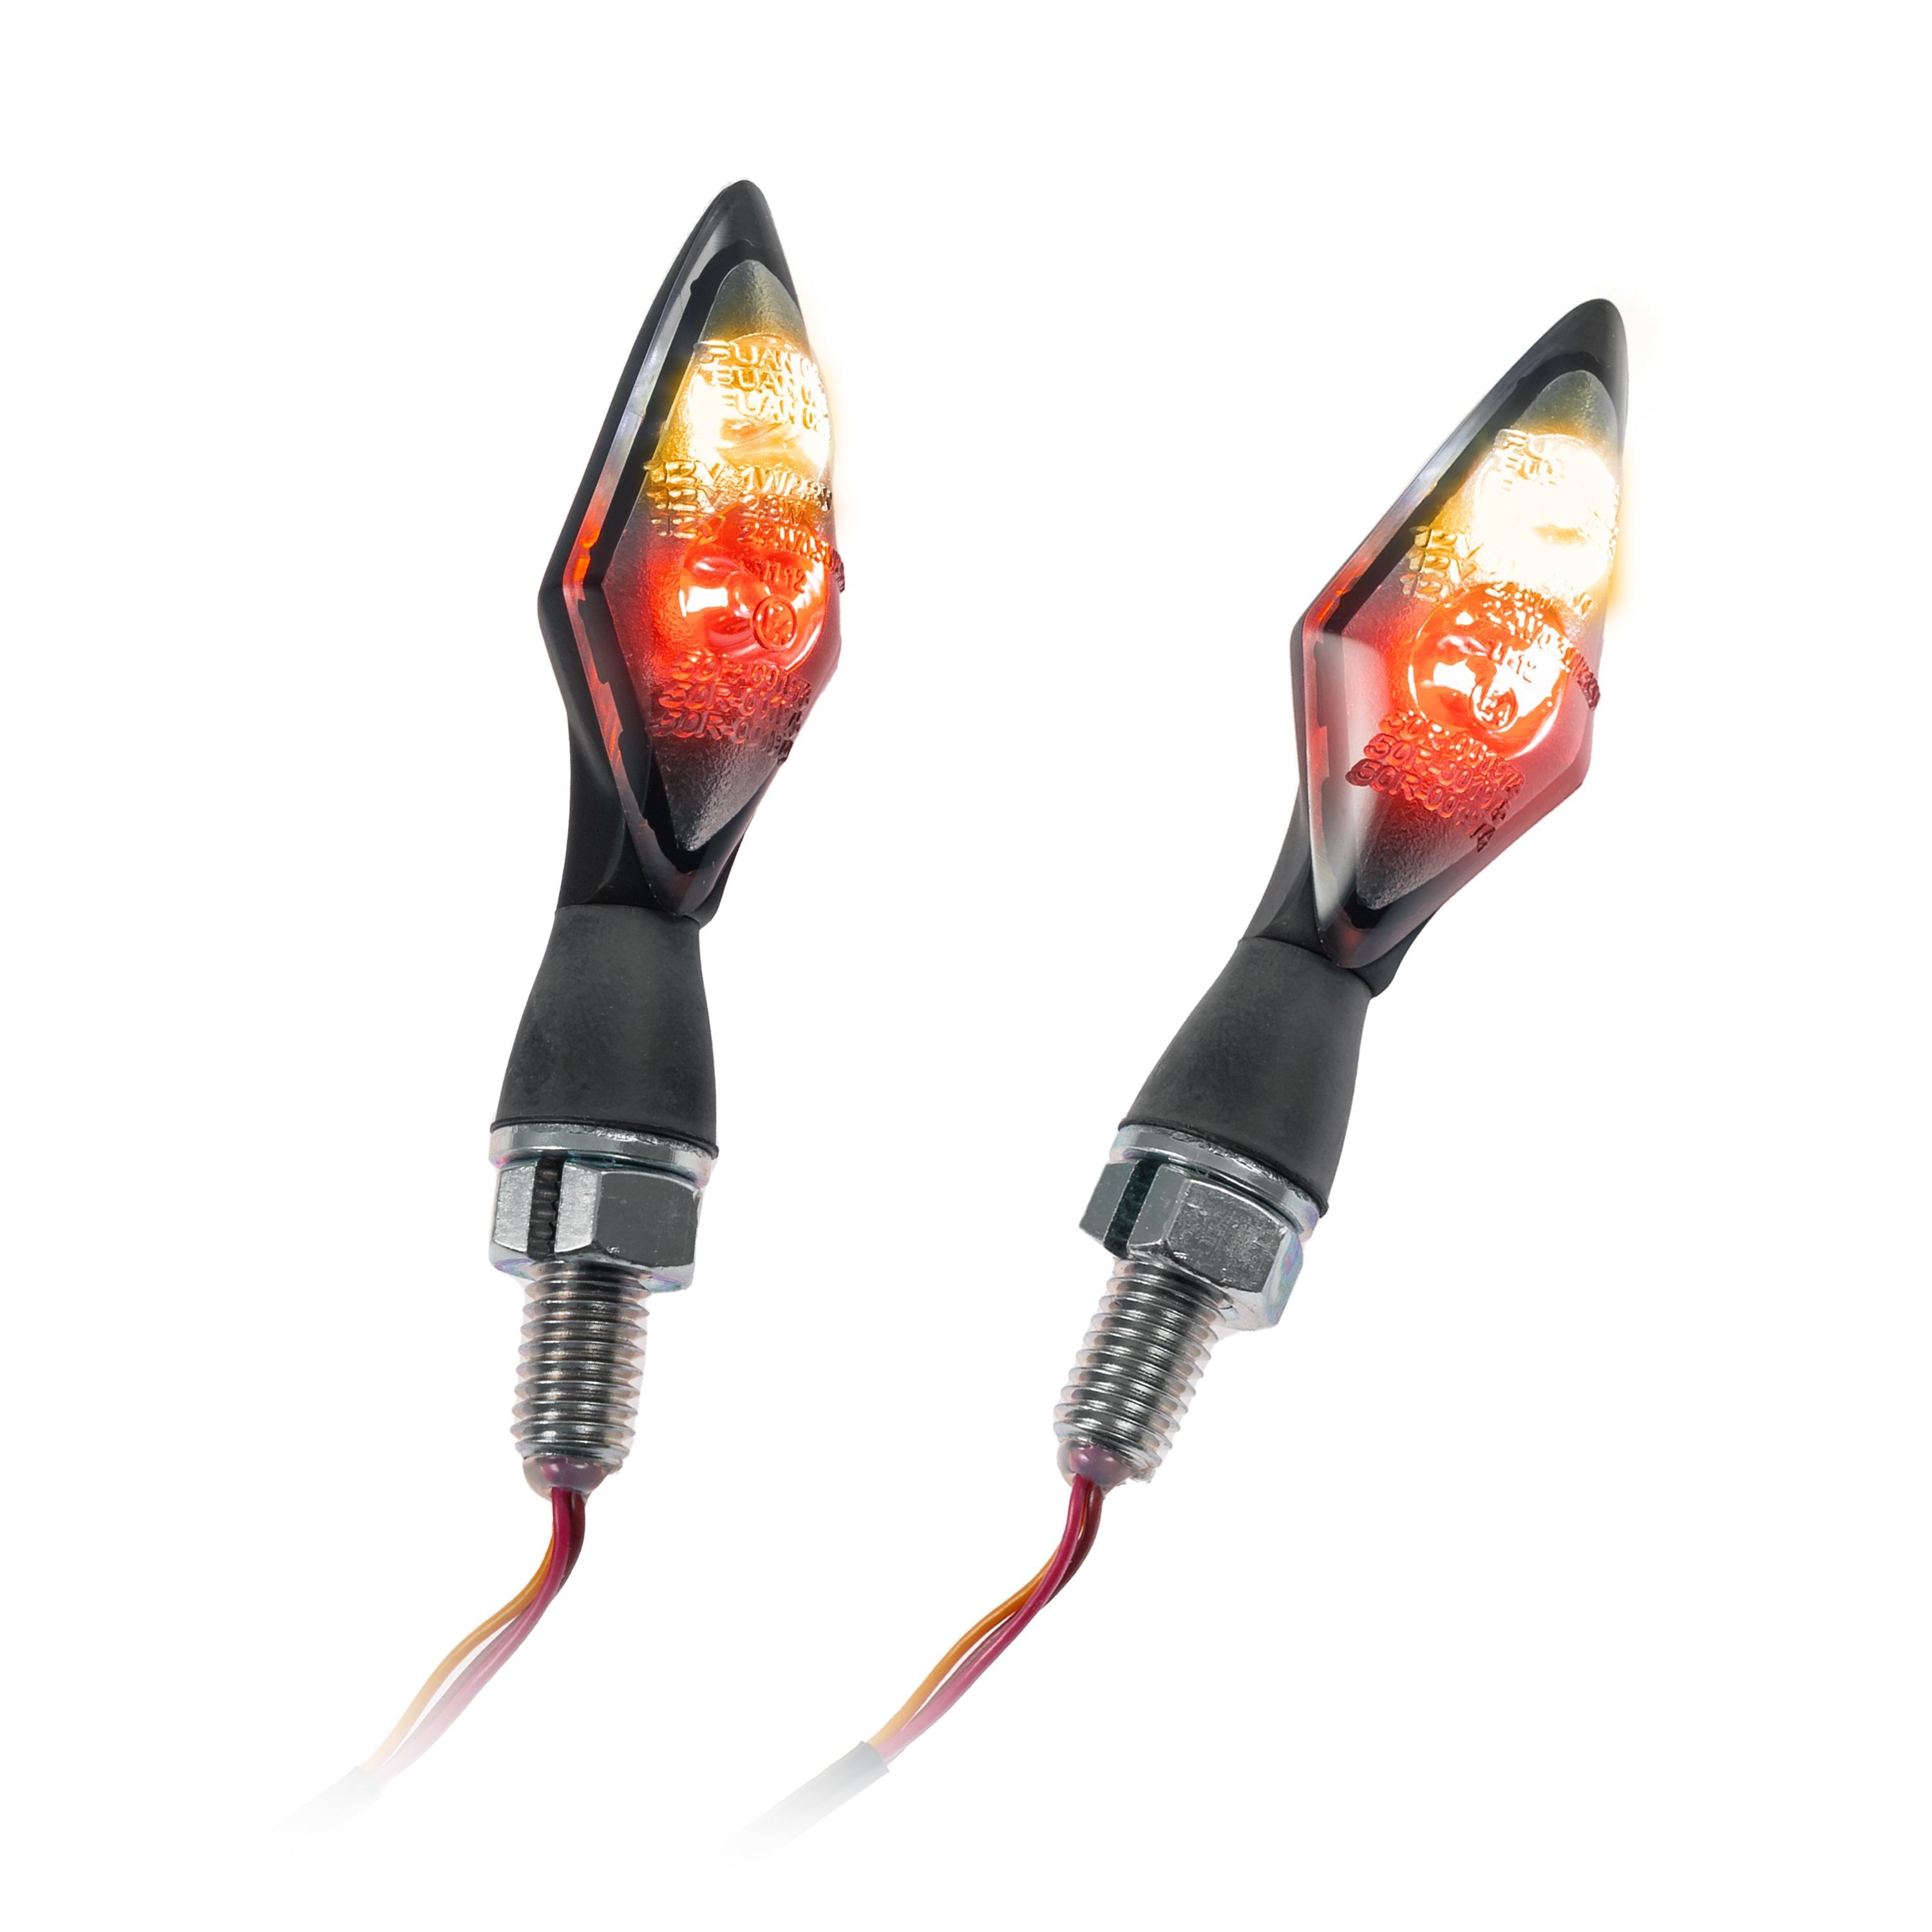 IBEX Blinker LED-Blinker Spark Rücklichtkombi getönt E-geprüft